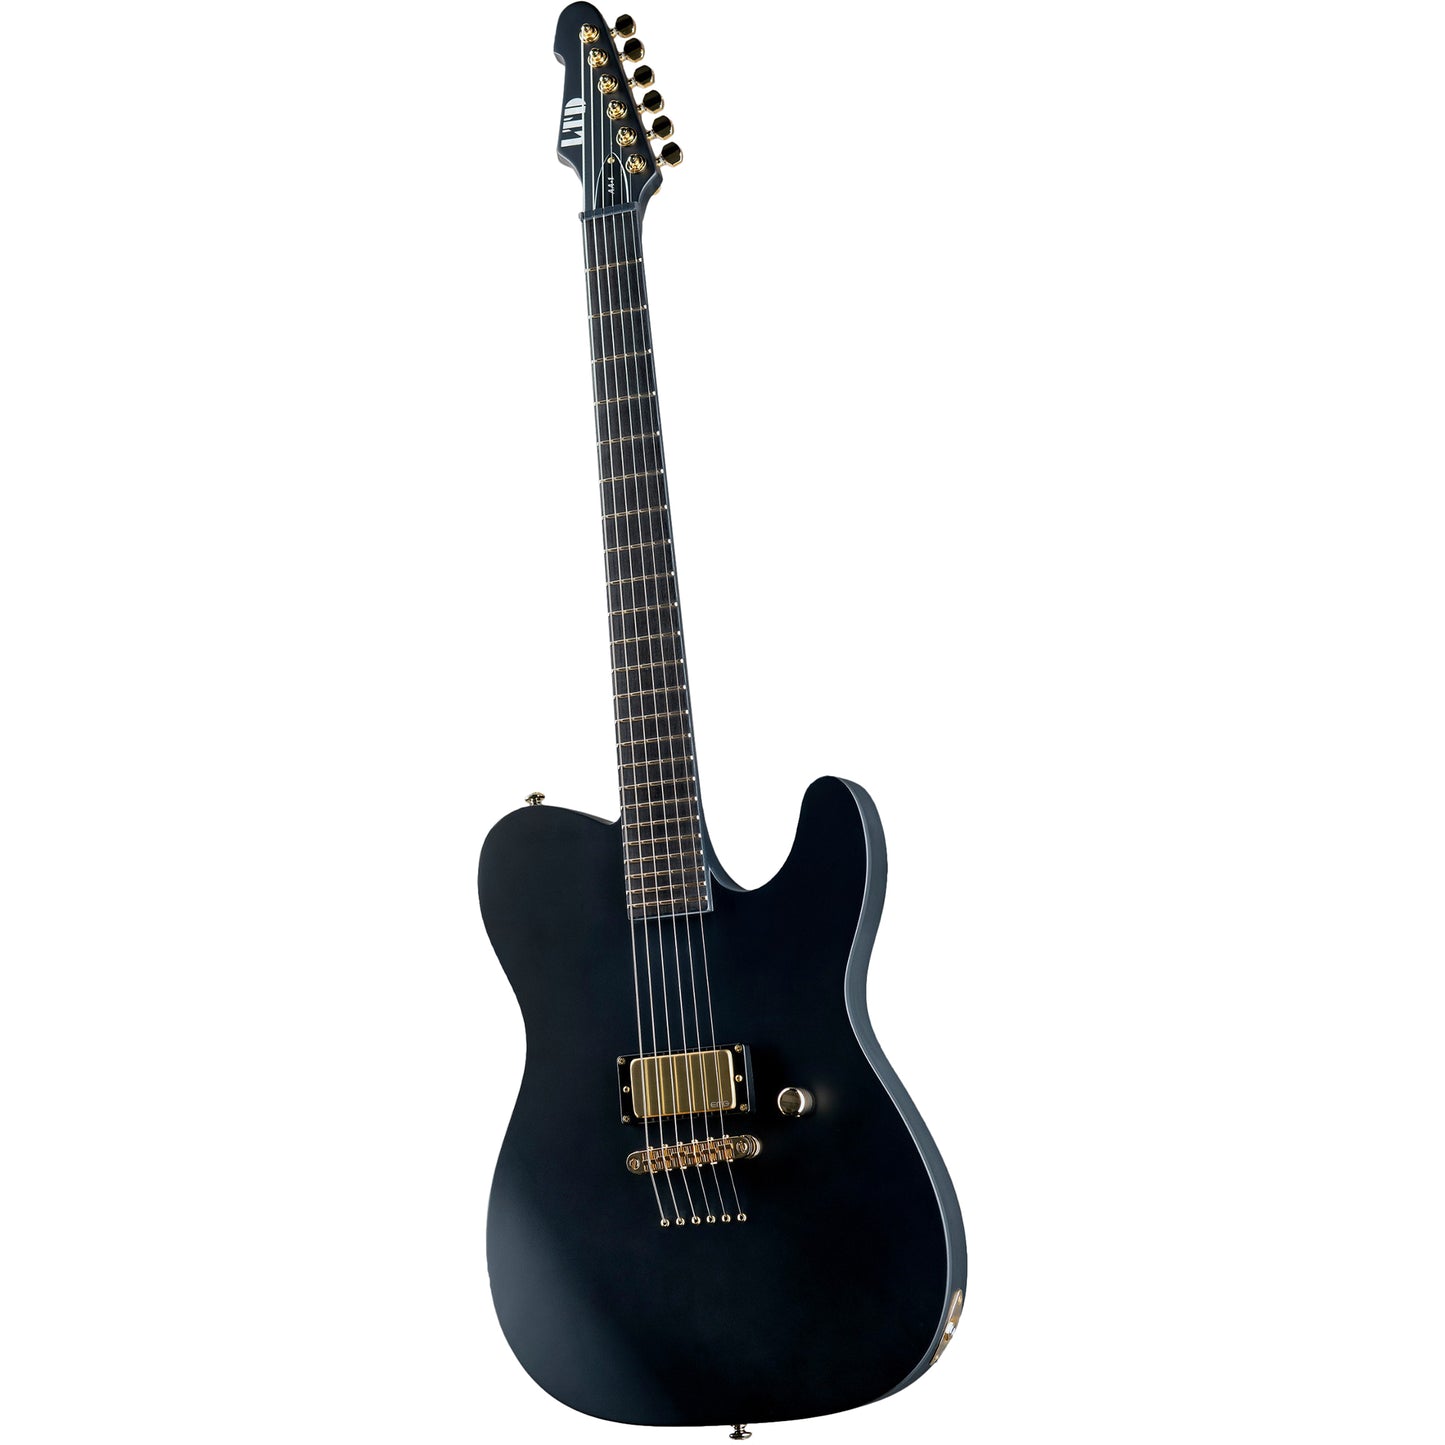 ESP LTD AA-1 Alan Ashby Signature Electric Guitar, Black Satin